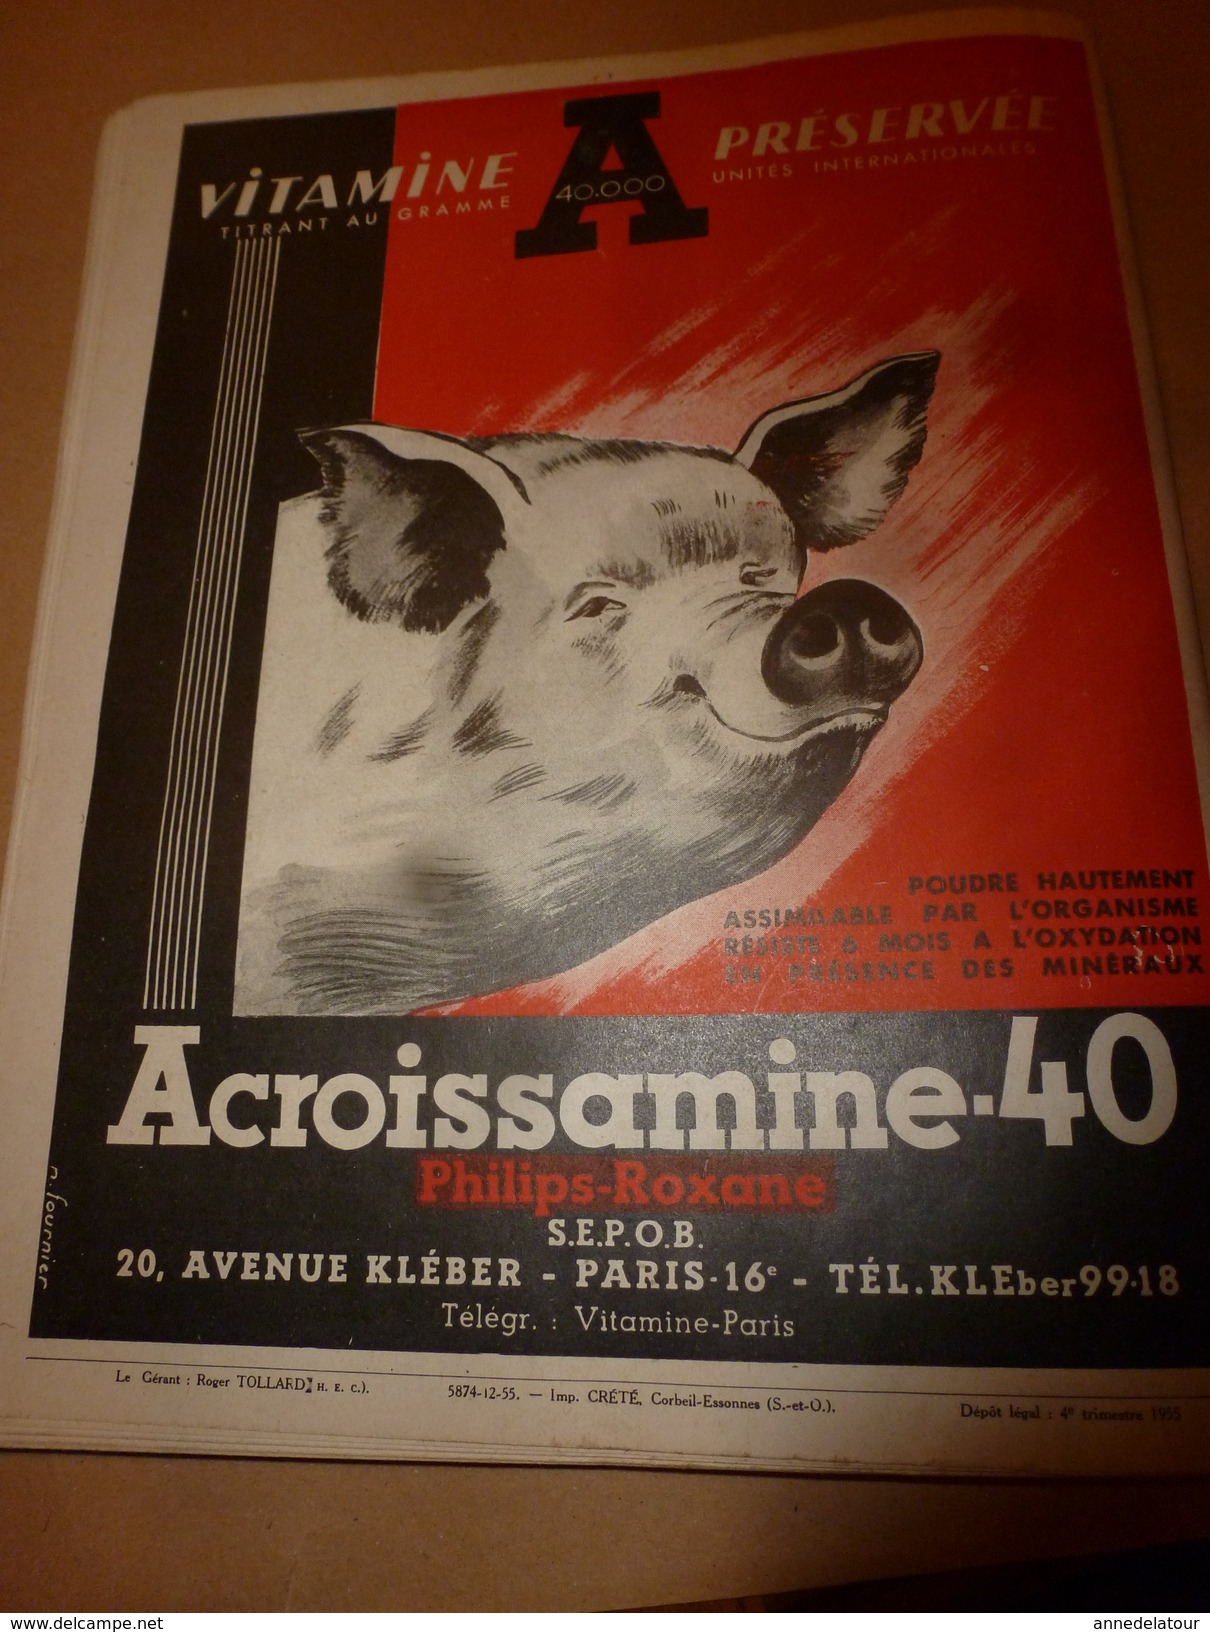 1955 N° SPECIAL De La Revue de L'Elevage BETAIL & BASSE-COUR--->CHOIX et UTILSATION des REPRODUCTEURS ; etc